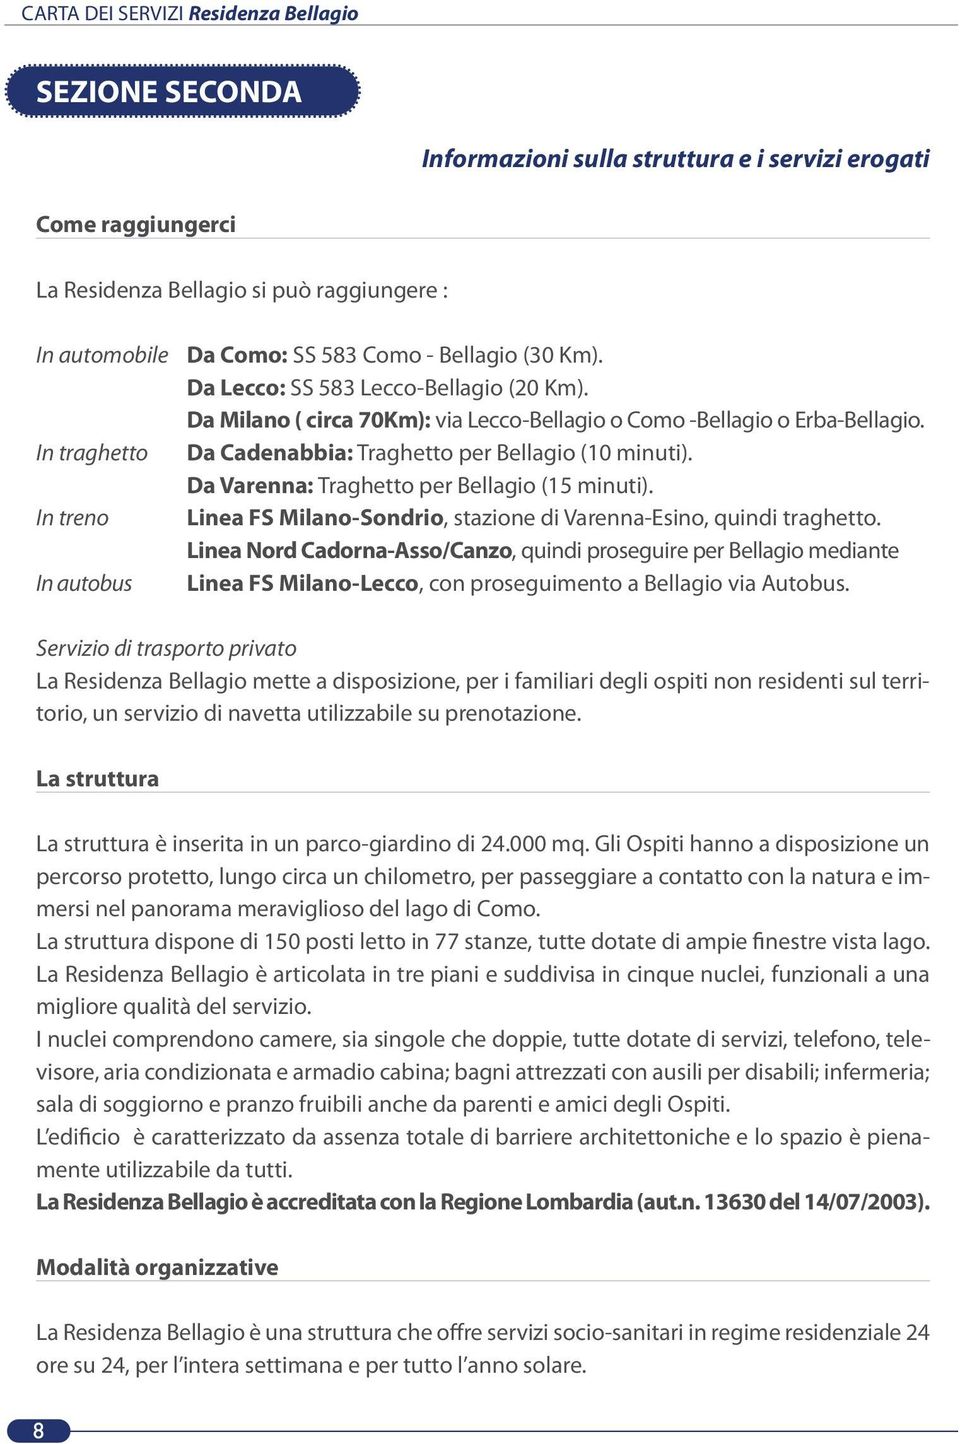 Da Varenna: Traghetto per Bellagio (15 minuti). Linea FS Milano-Sondrio, stazione di Varenna-Esino, quindi traghetto.